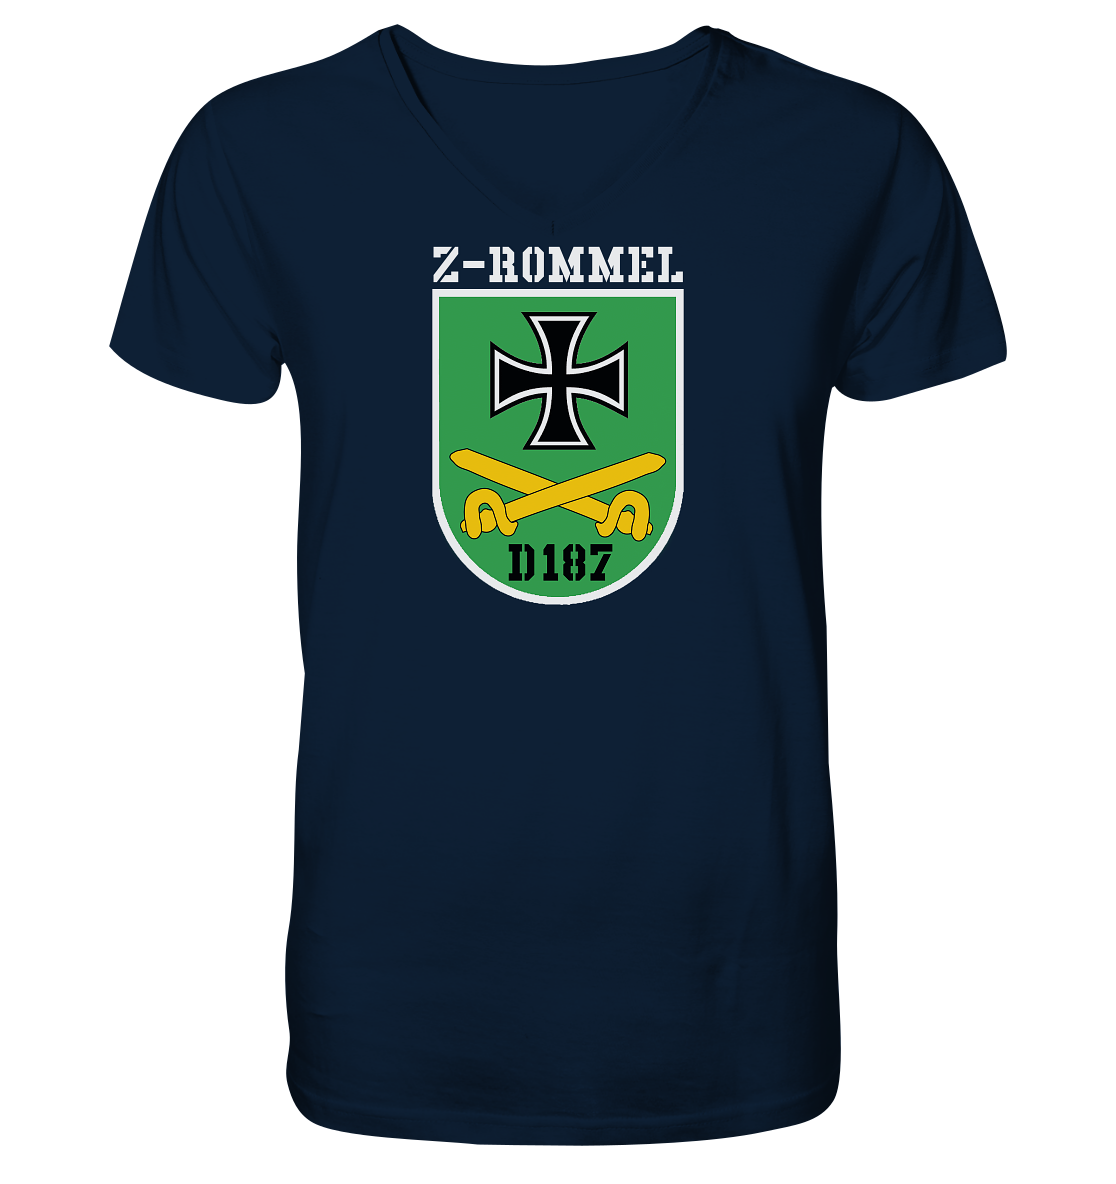 Z-Rommel Wappen - Mens Organic V-Neck Shirt